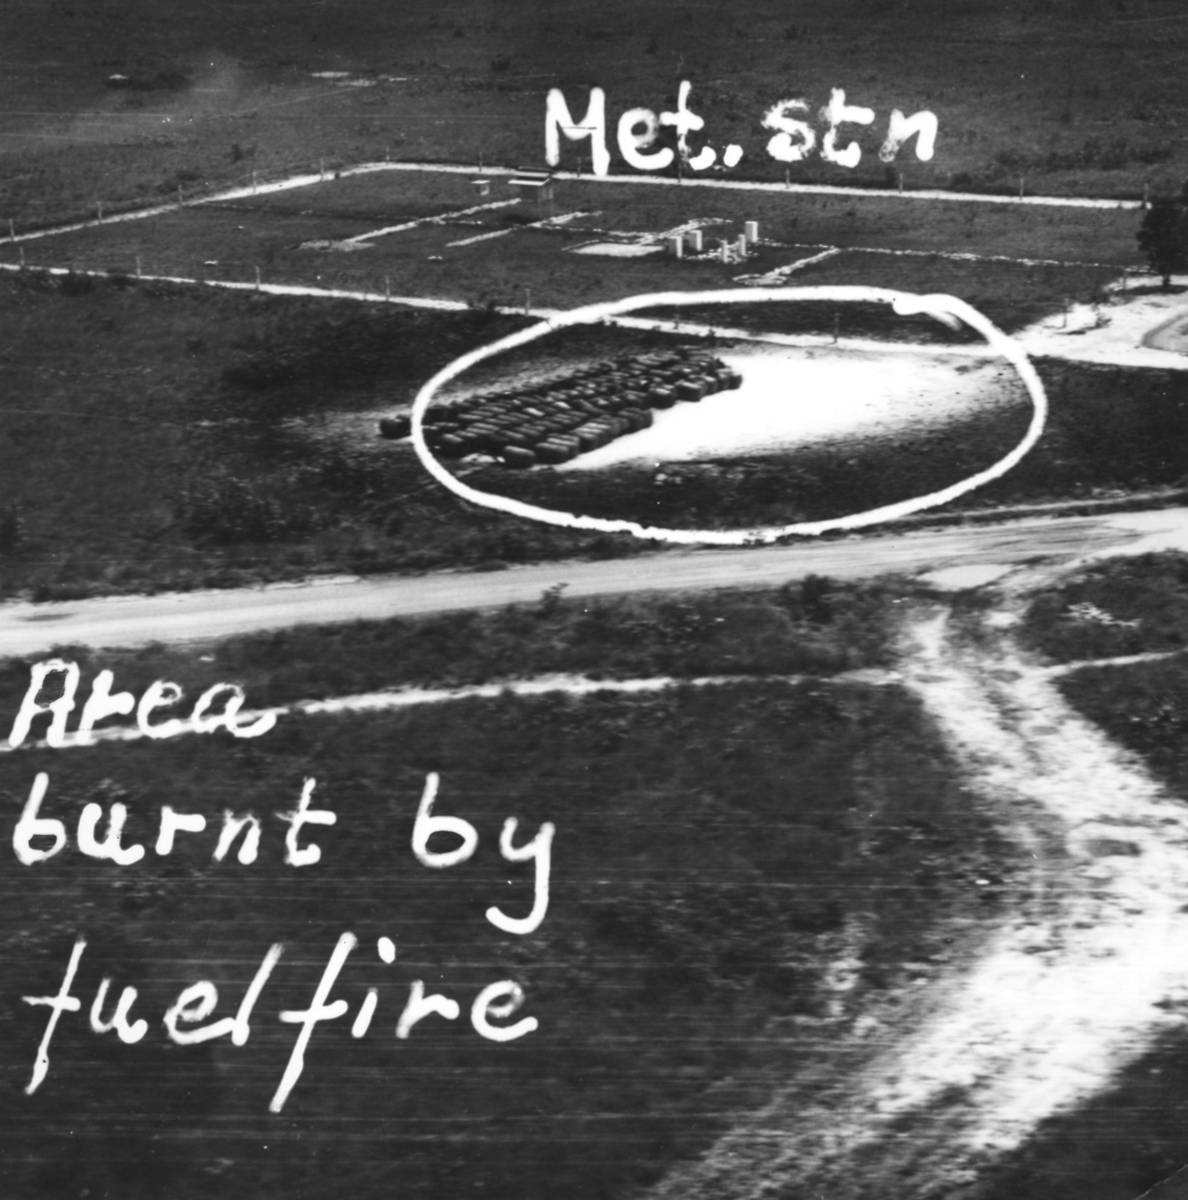 Flygspaningsbild av flygstation i Kongo, taget av F 22 under Kongokrisen 1962-1963. Med påritad information "Met. stn. Area burnt by fuelfire"